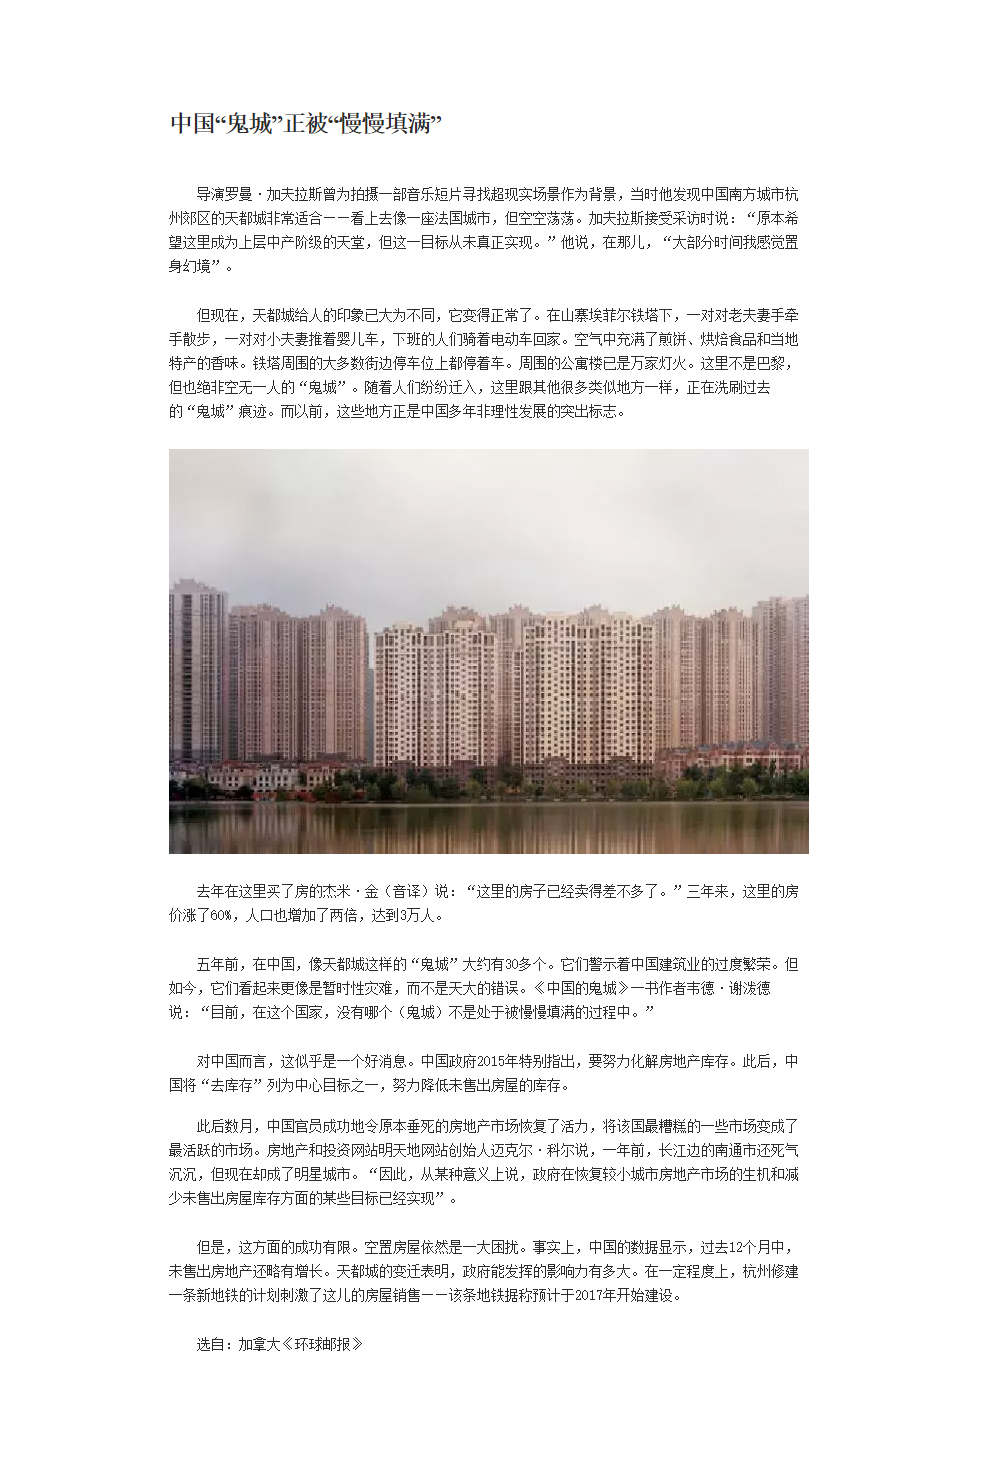 中国鬼城正被慢慢填满.jpg